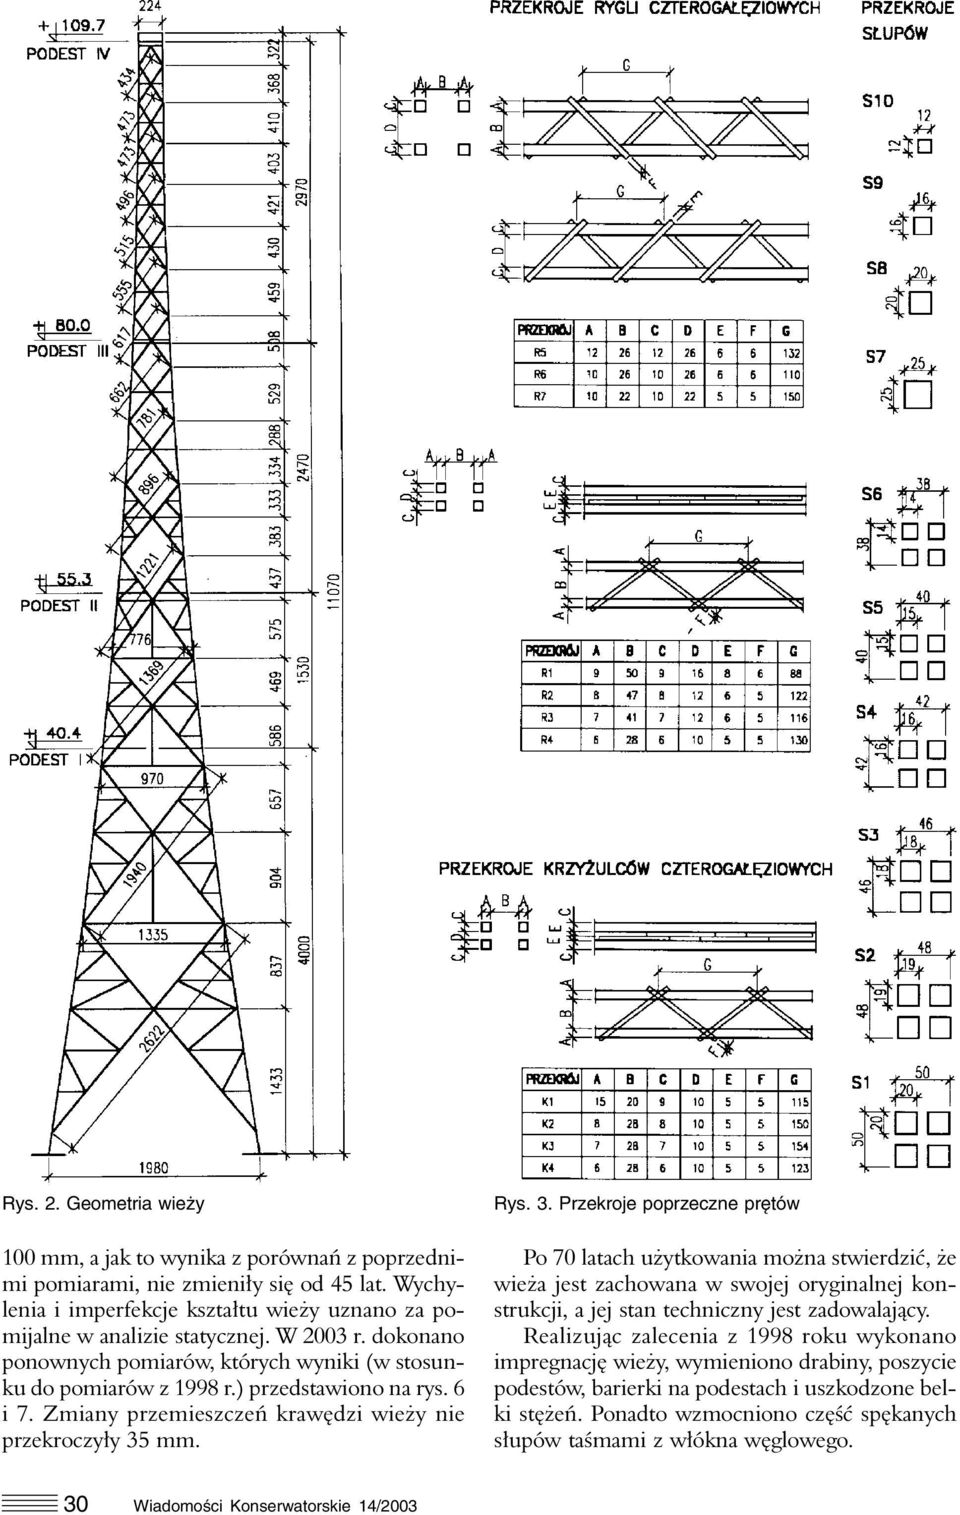 mm. Rys. 3. Przekroje poprzeczne prętów Po 70 latach użytkowania można stwierdzić, że wieża jest zachowana w swojej oryginalnej konstrukcji, a jej stan techniczny jest zadowalający.